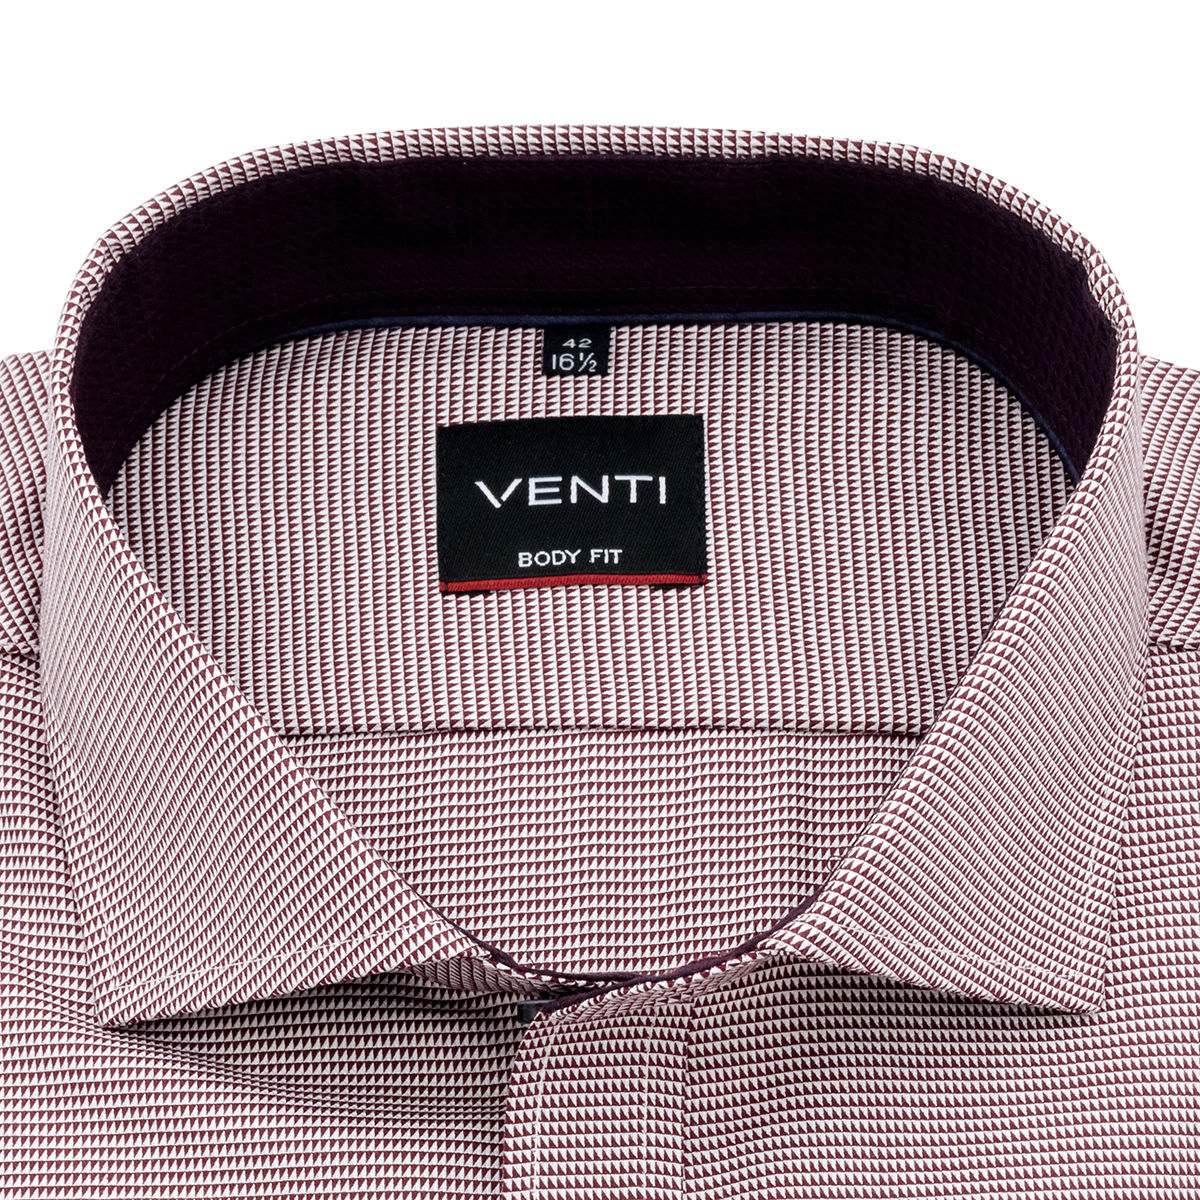 Рубашка Venti Body Fit 193278200-400 из структурной ткани в винно-коричневой гамме